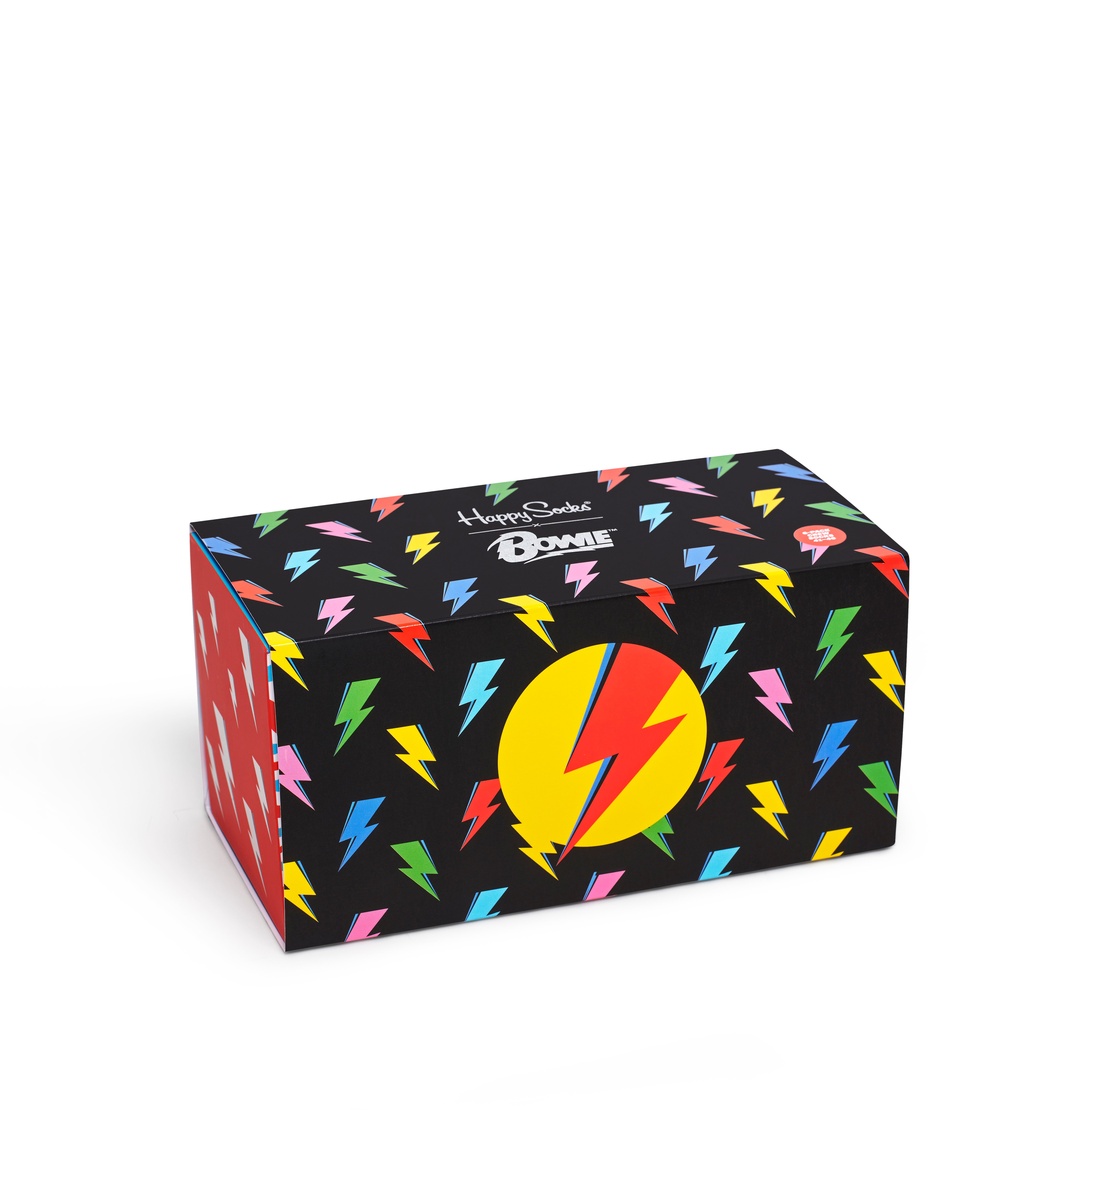 Diseño de caja de calcetines David Bowie de HappySocks